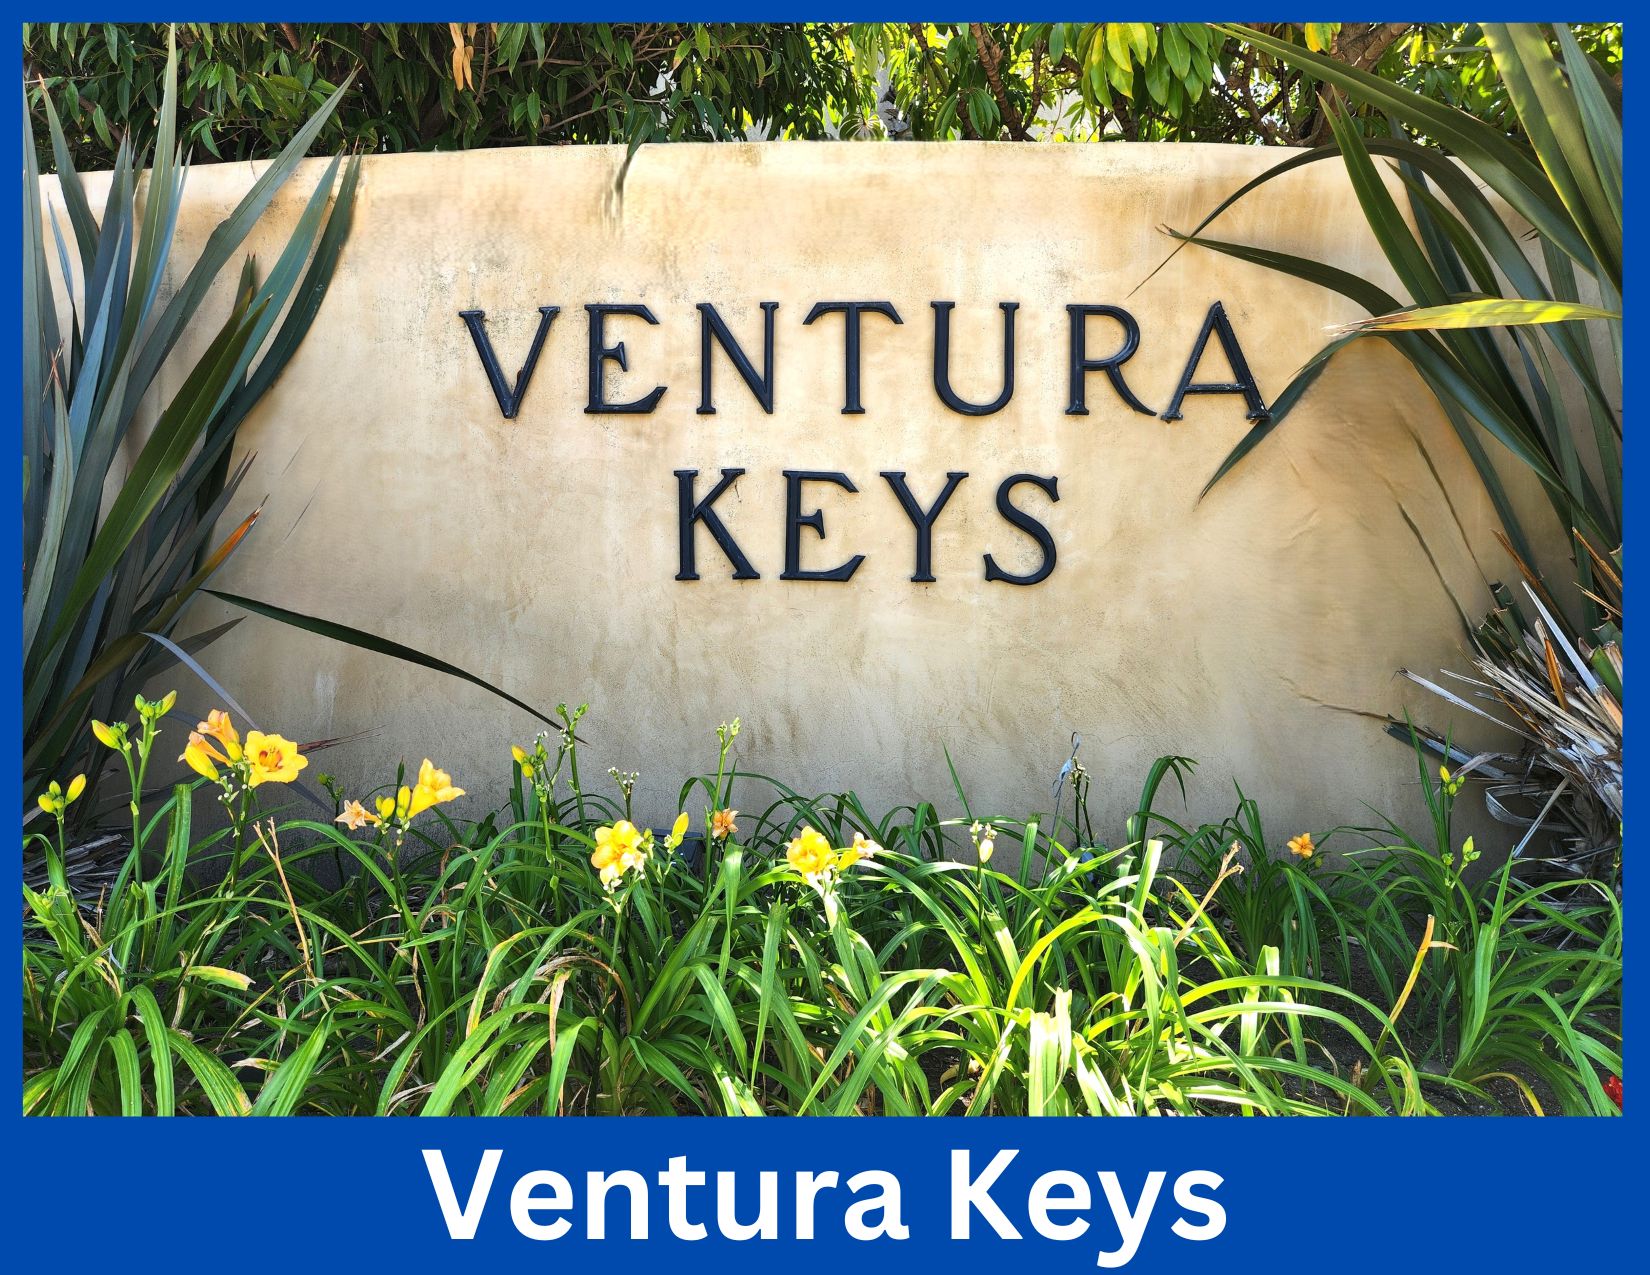 Ventura Keys, Ventura